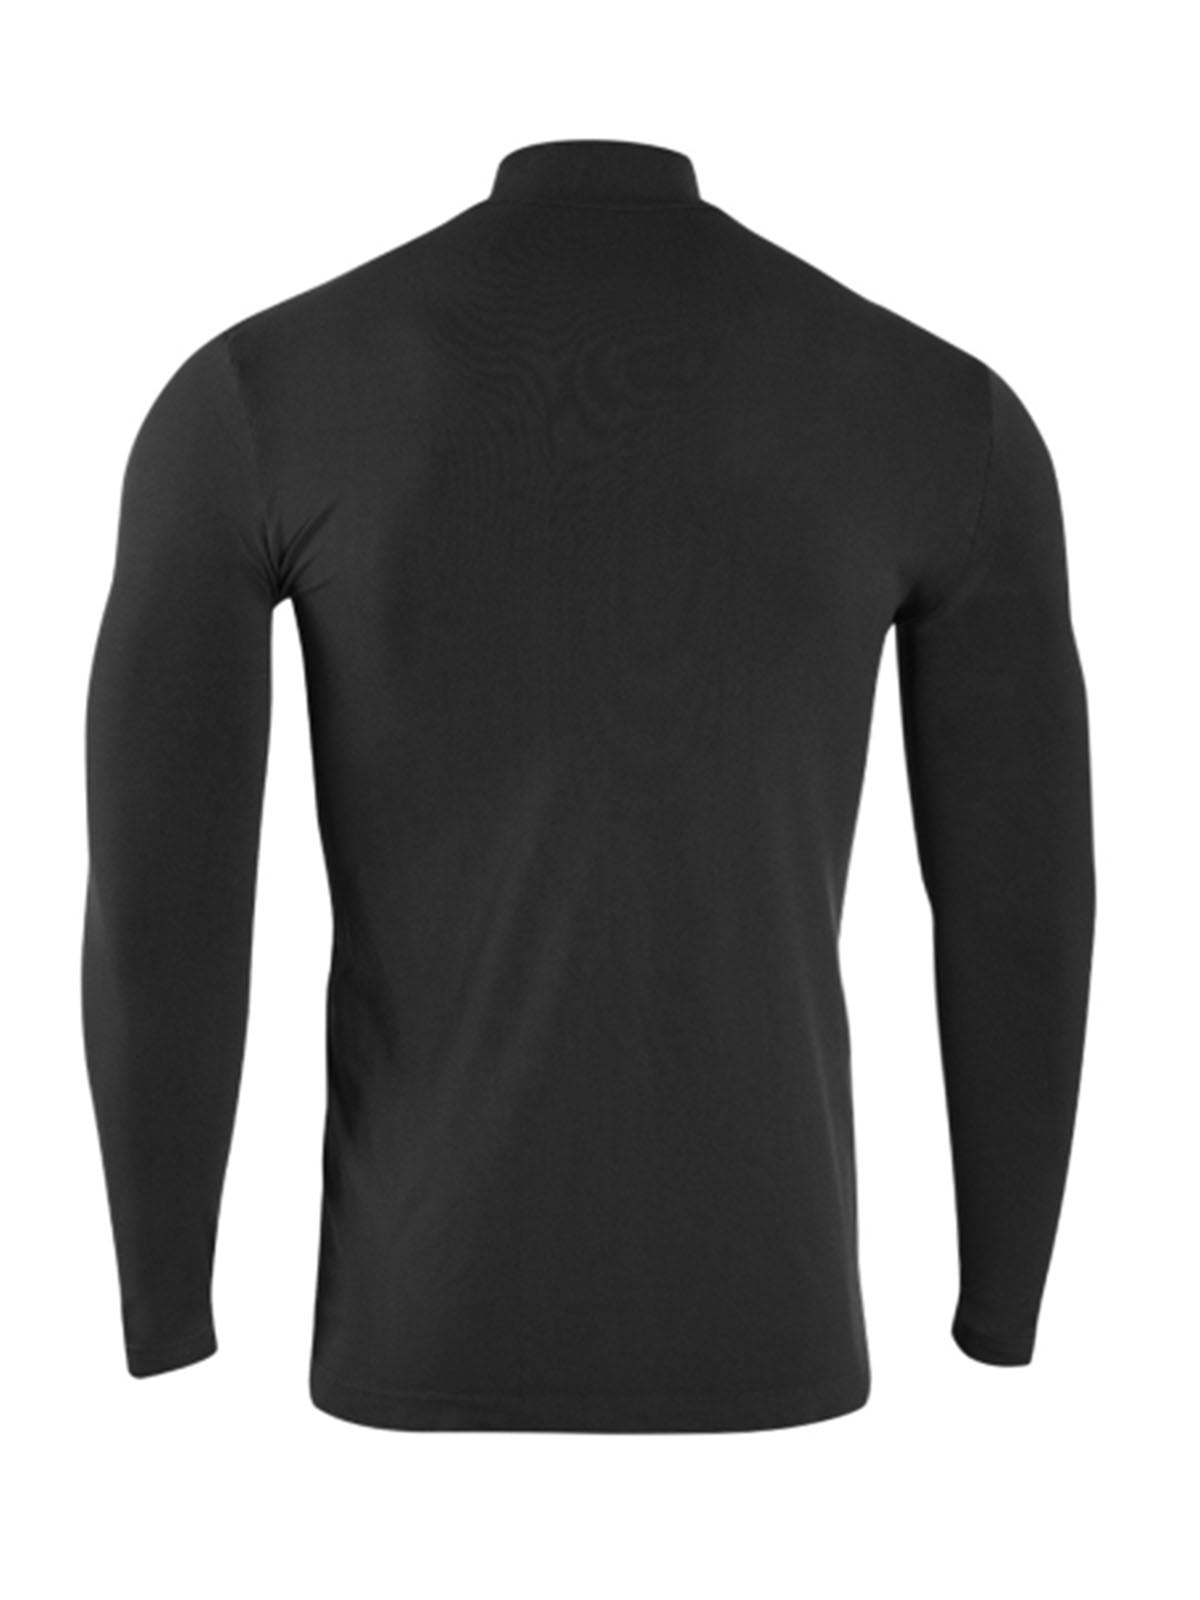 Maglie Uomo Iron-ic - T-Shirt Cashmere Collo Alto E Manica Lunga - Nero